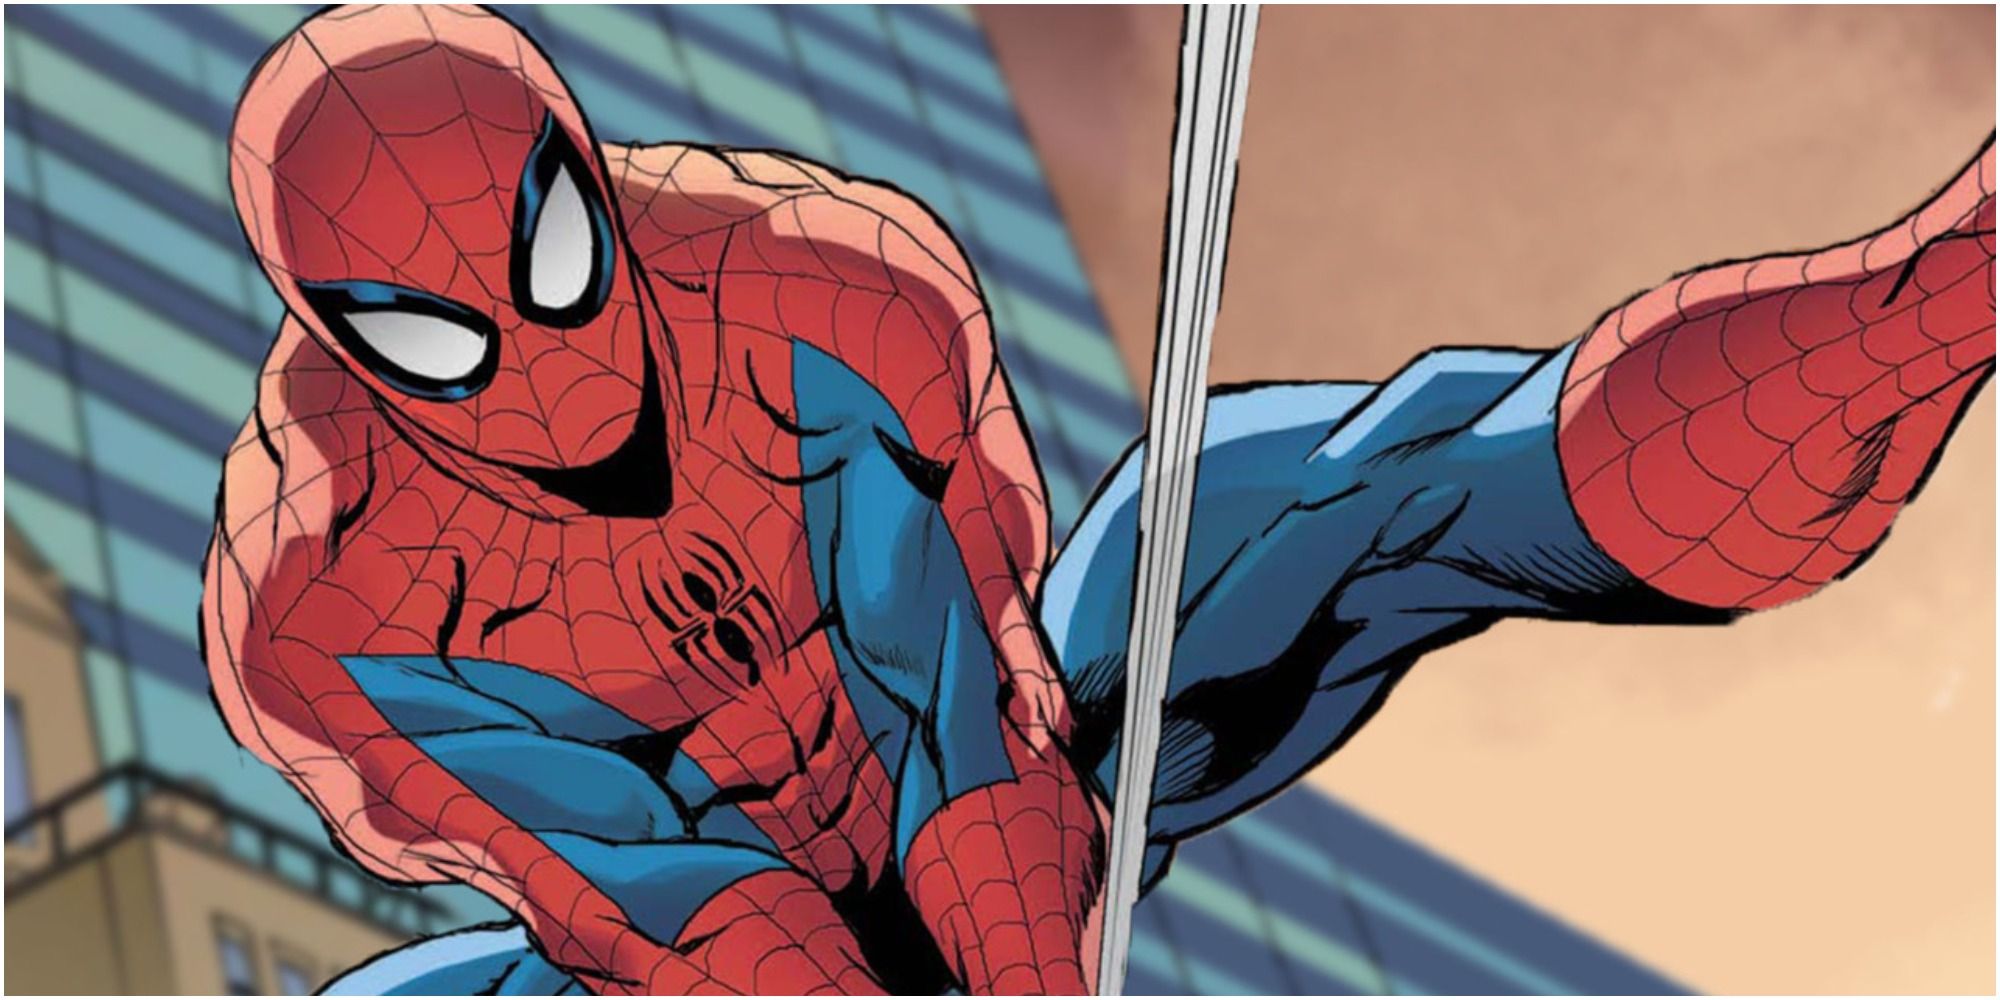 Comic Spider-Man swings through the air